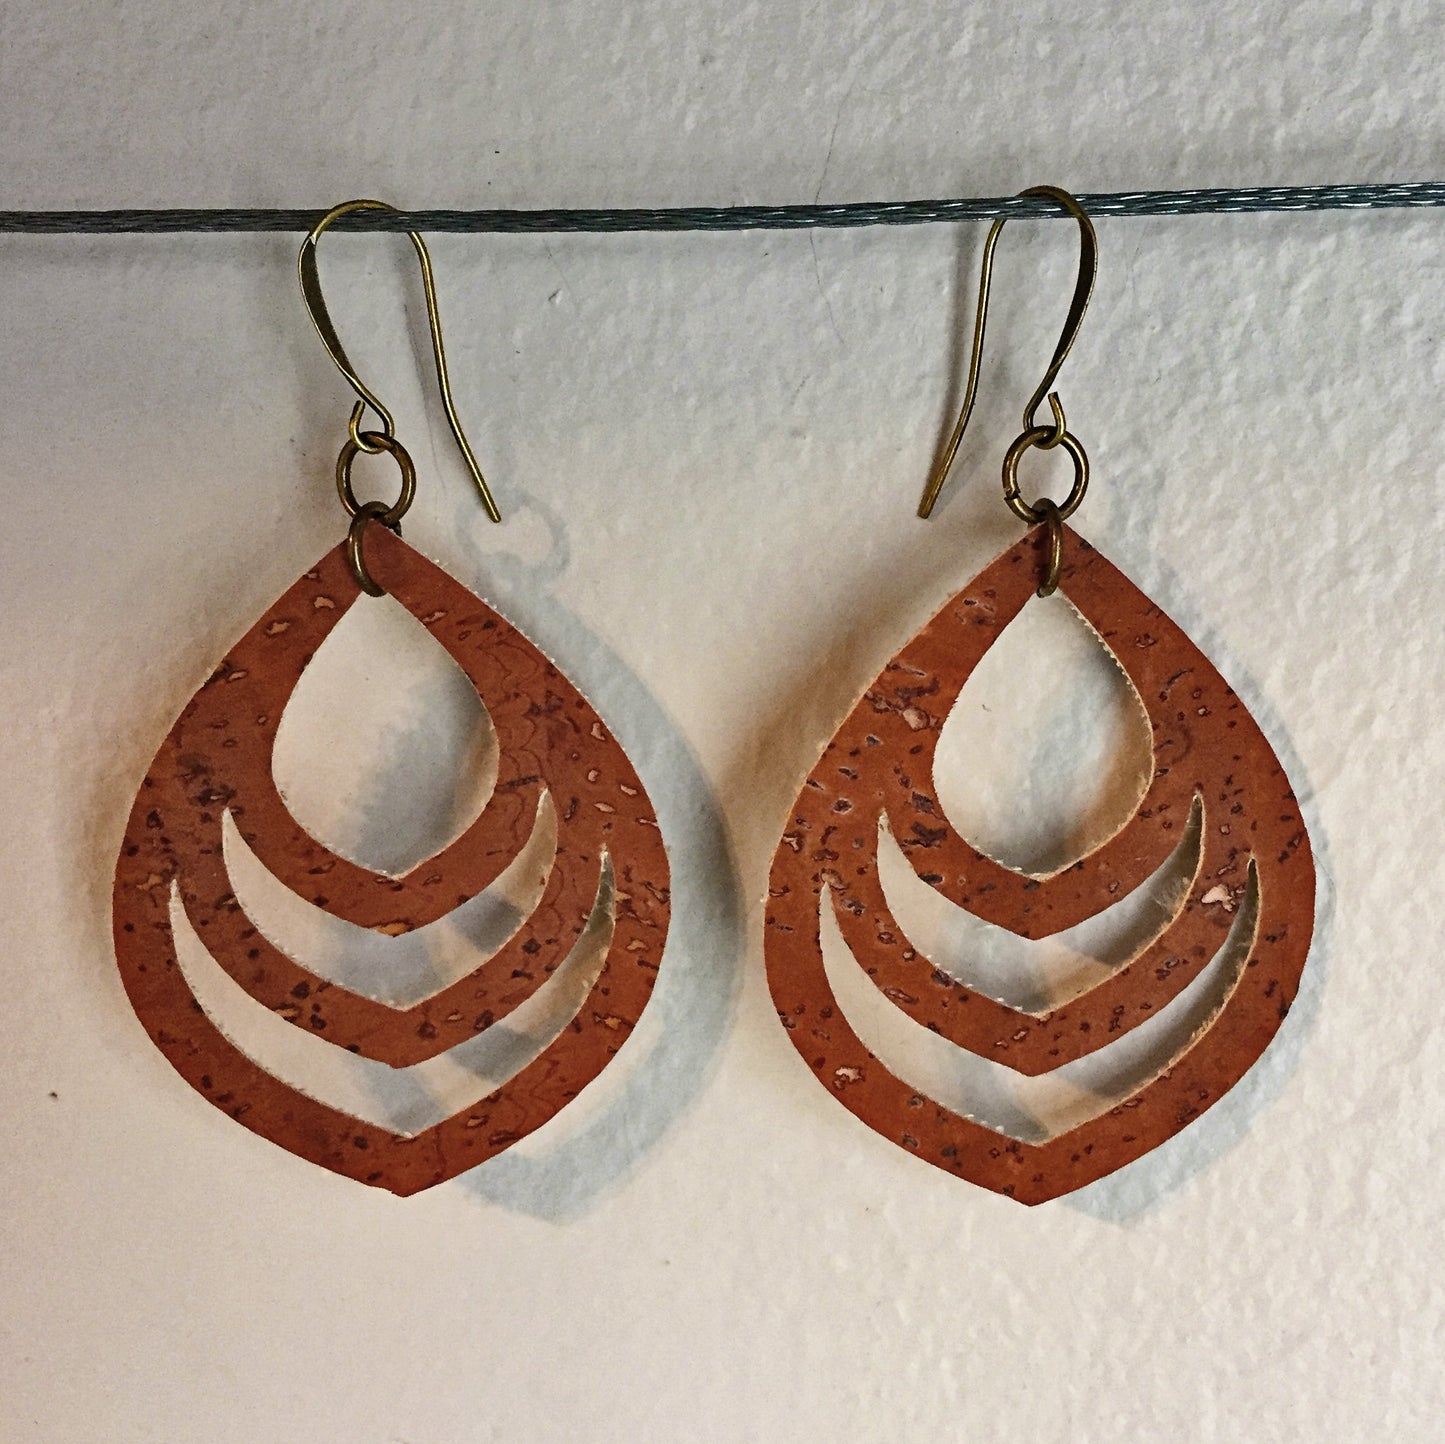 Cork Dangle Earrings /  Minimalist Earrings - Vegan Earrings - Boho Chic Earrings